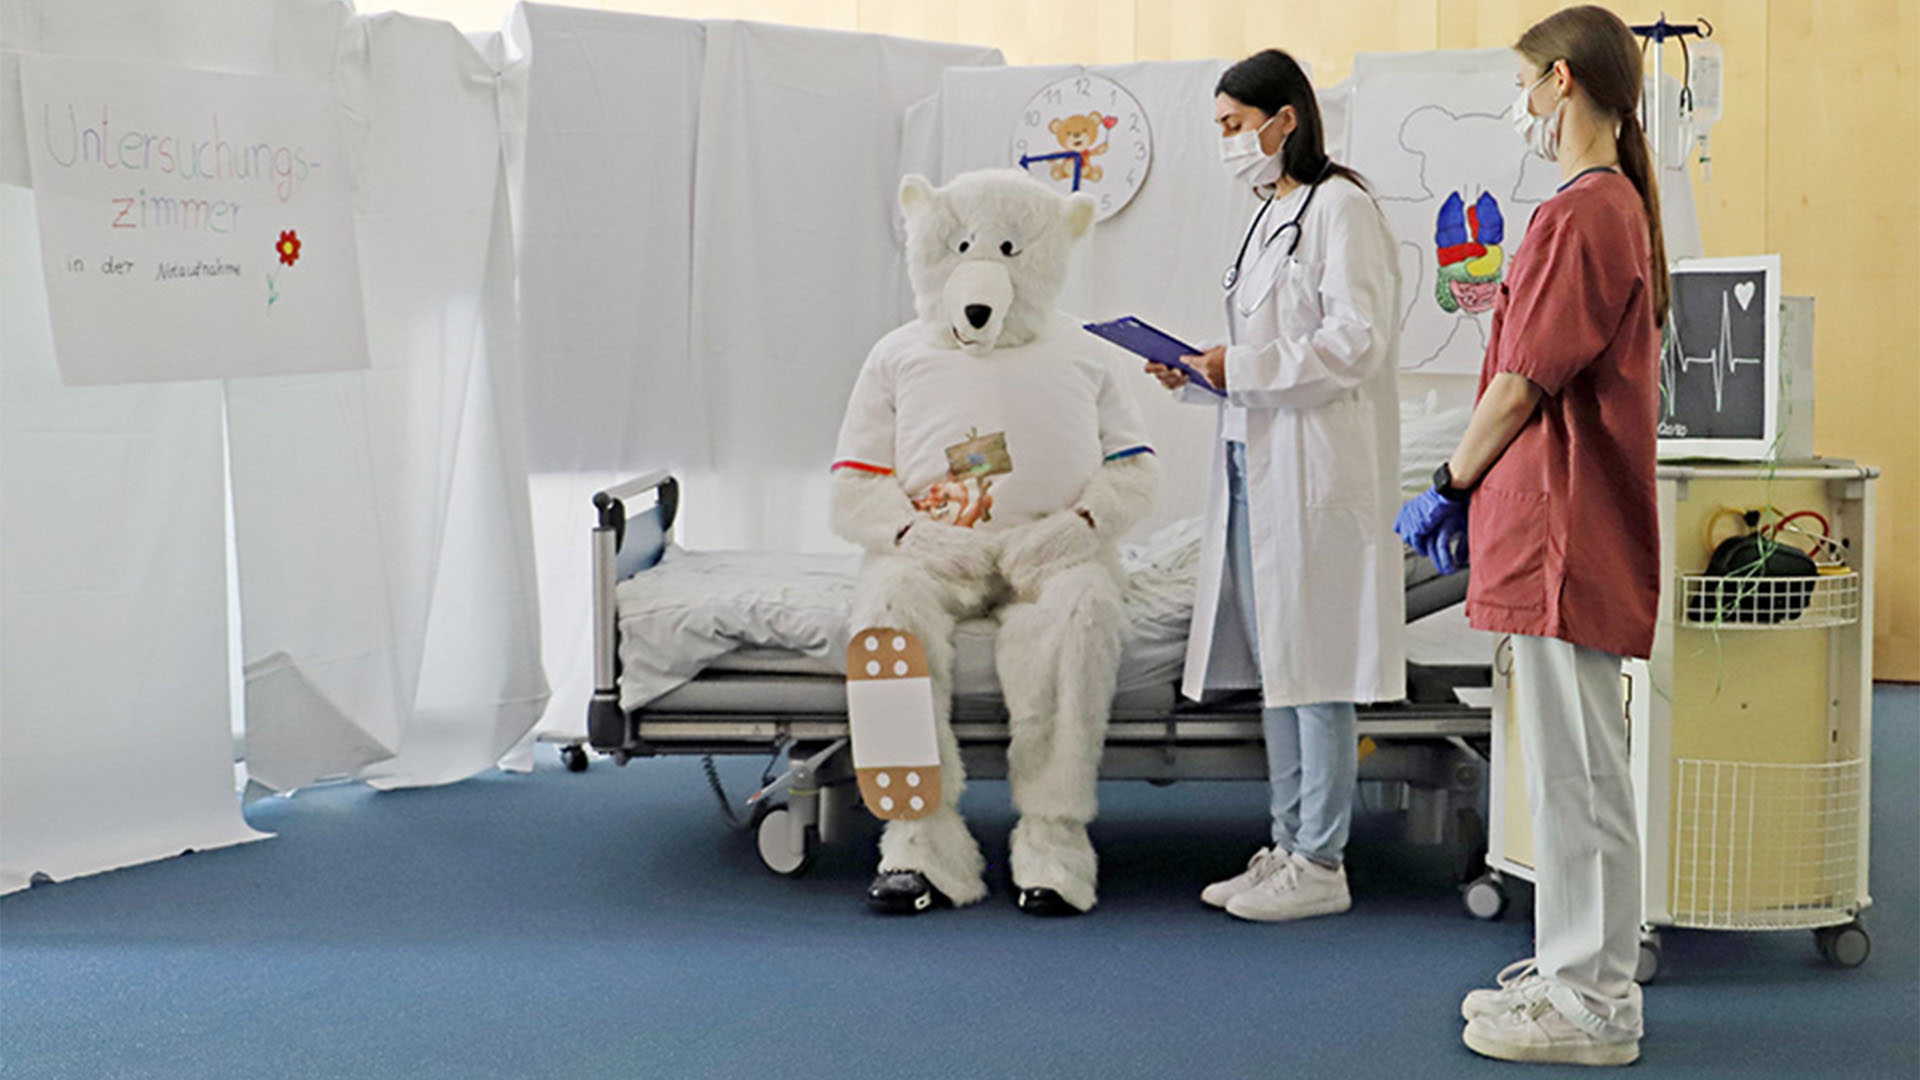 Ein Mensch im Bärenkostüm sitzt auf einem Krankenbett und hat ein großes Pflaster am Bein, eine Ärtzin steht daneben.